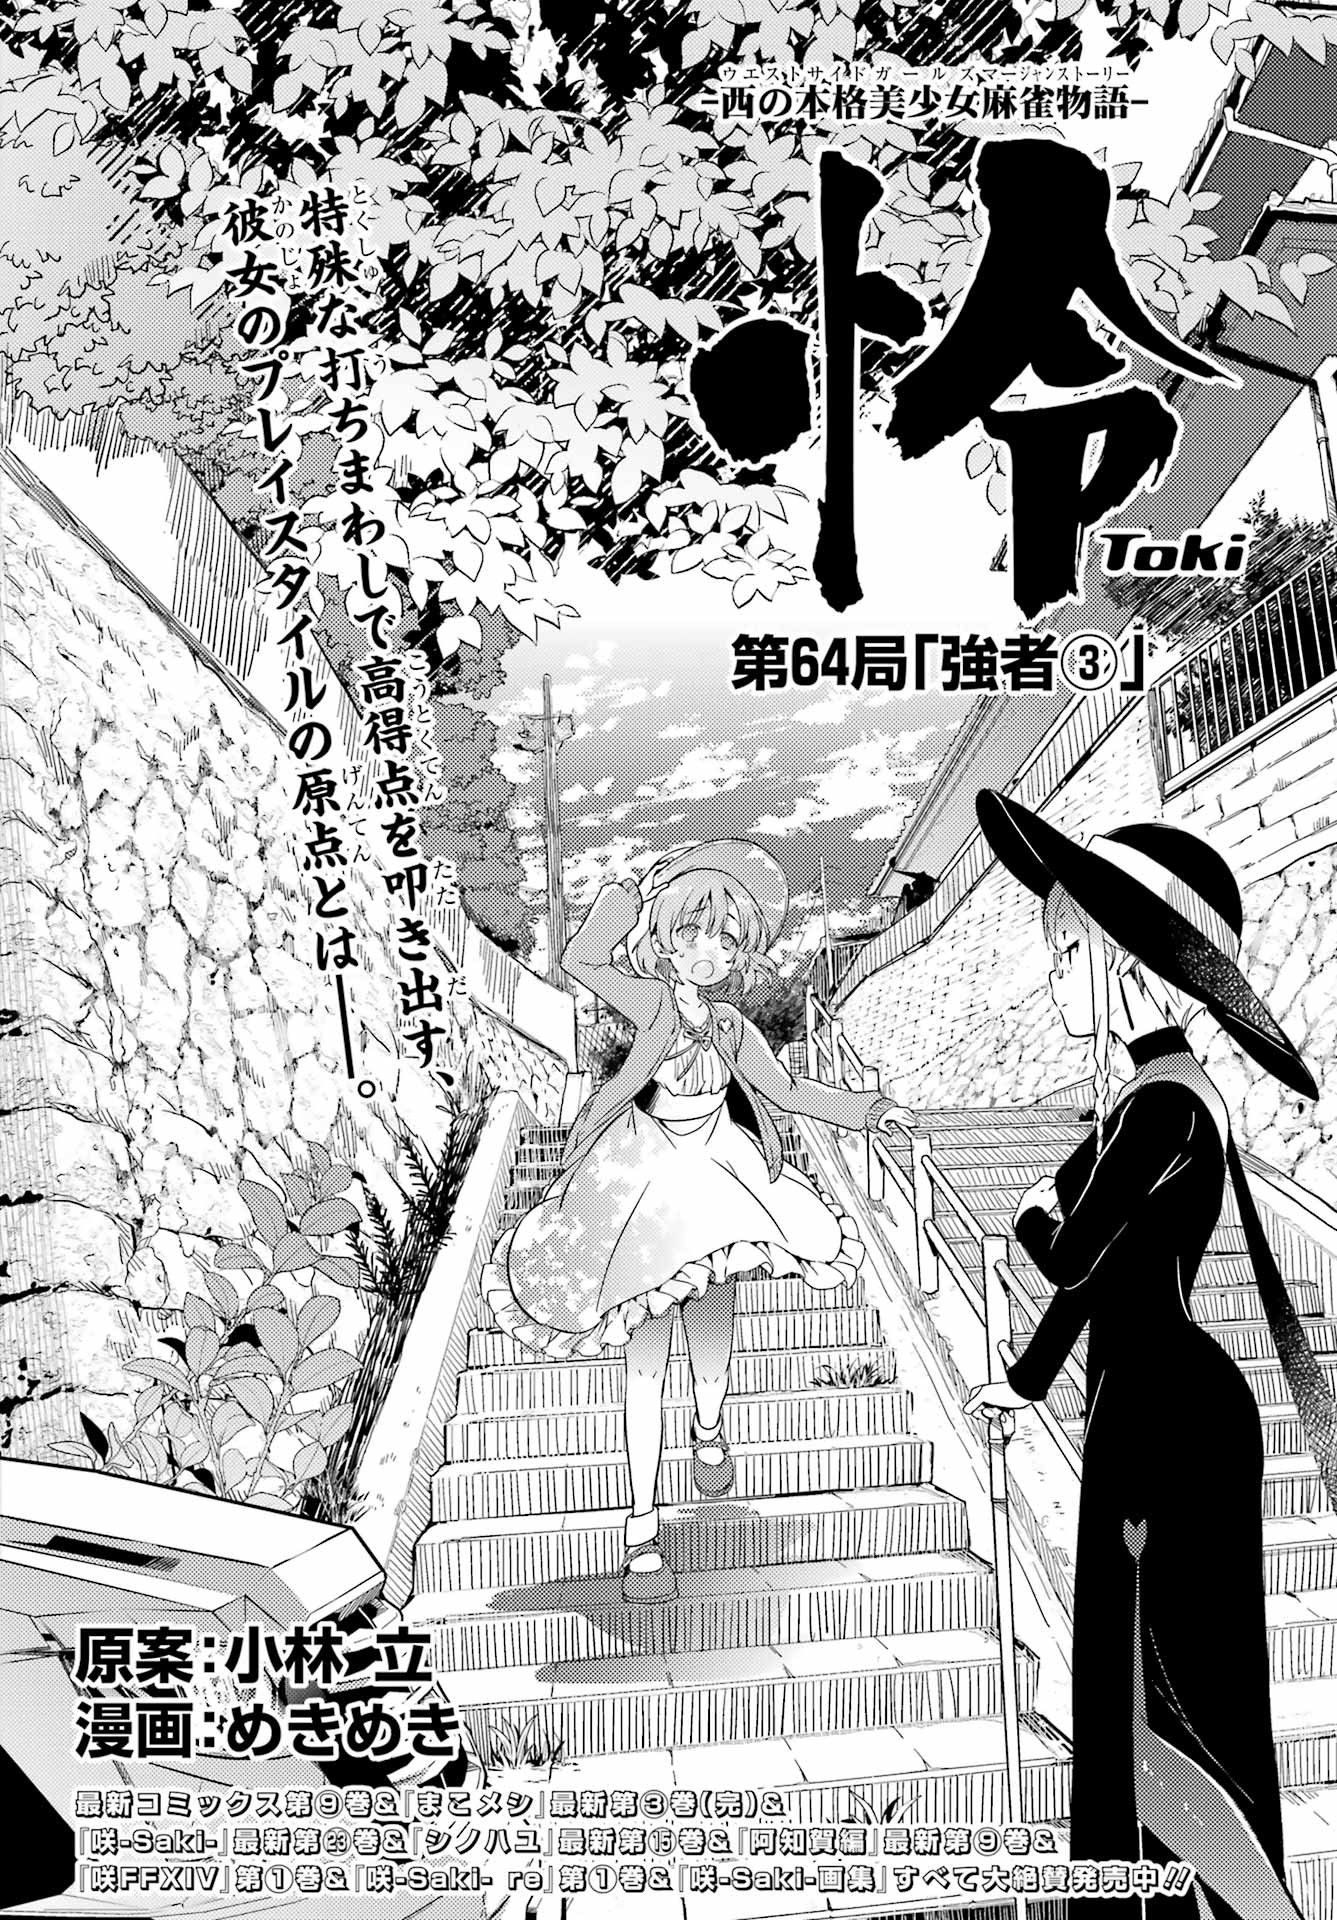 Toki (KOBAYASHI Ritz) - Chapter 064 - Page 2